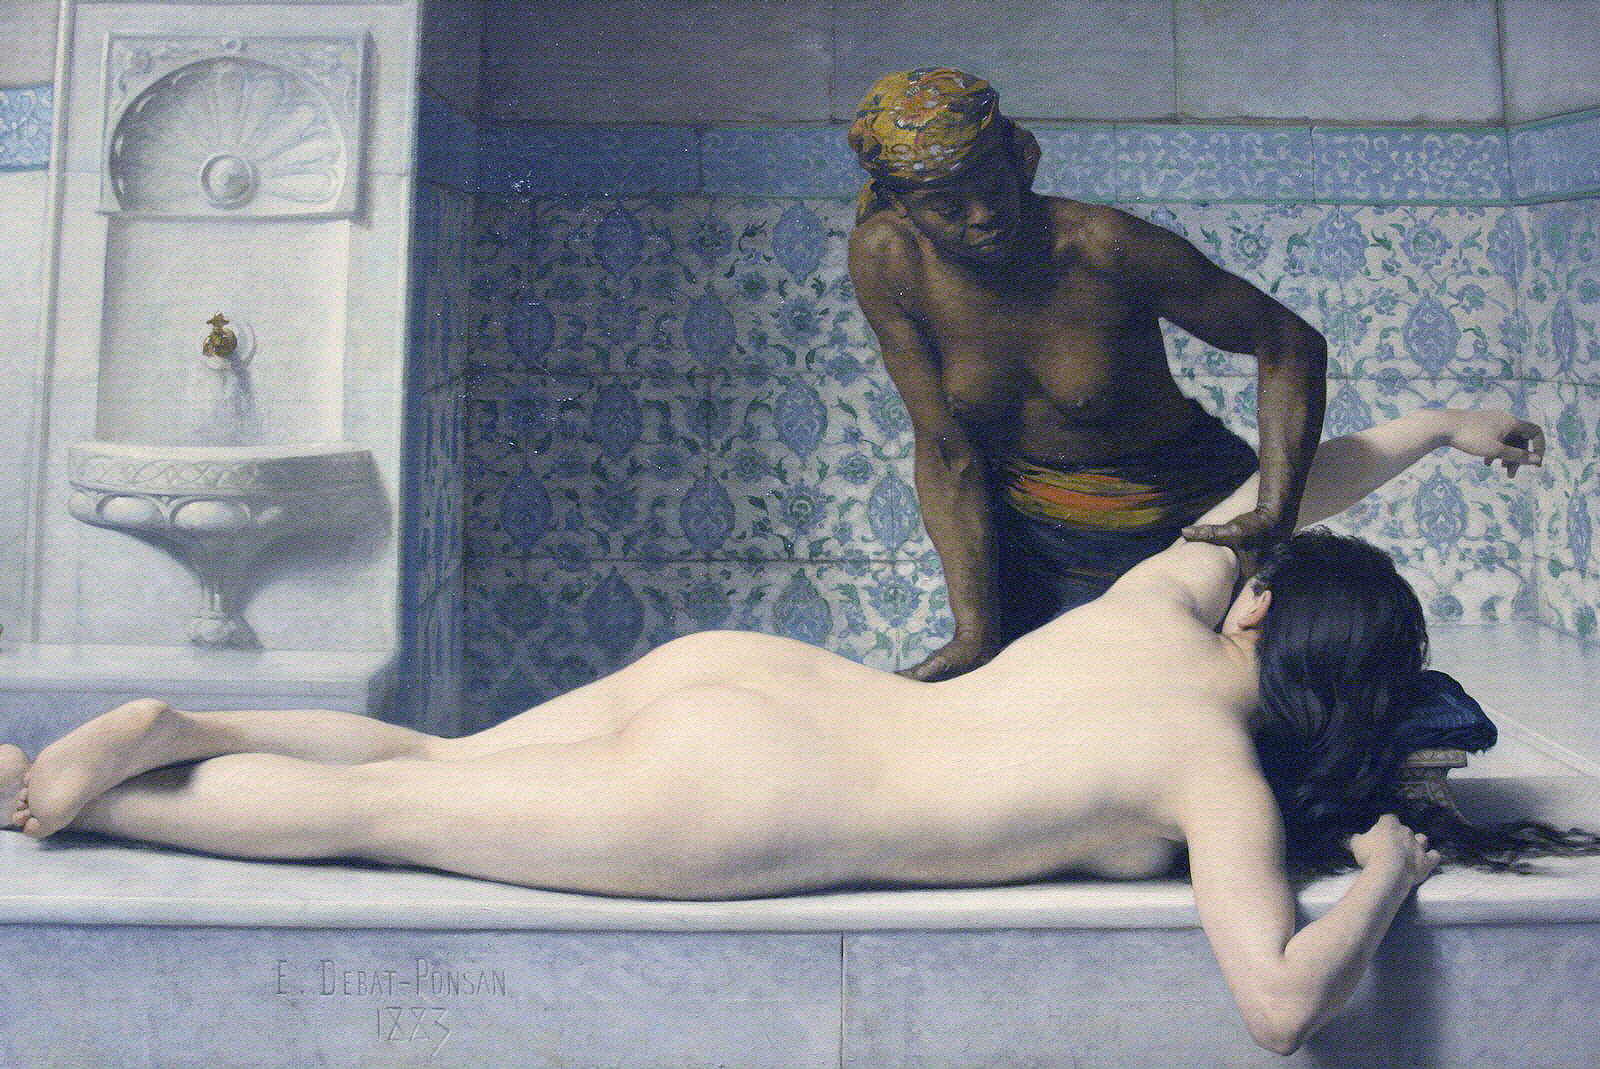 Le_massage_au_Hamam_par_Edouard_Debat-Ponsan_1883